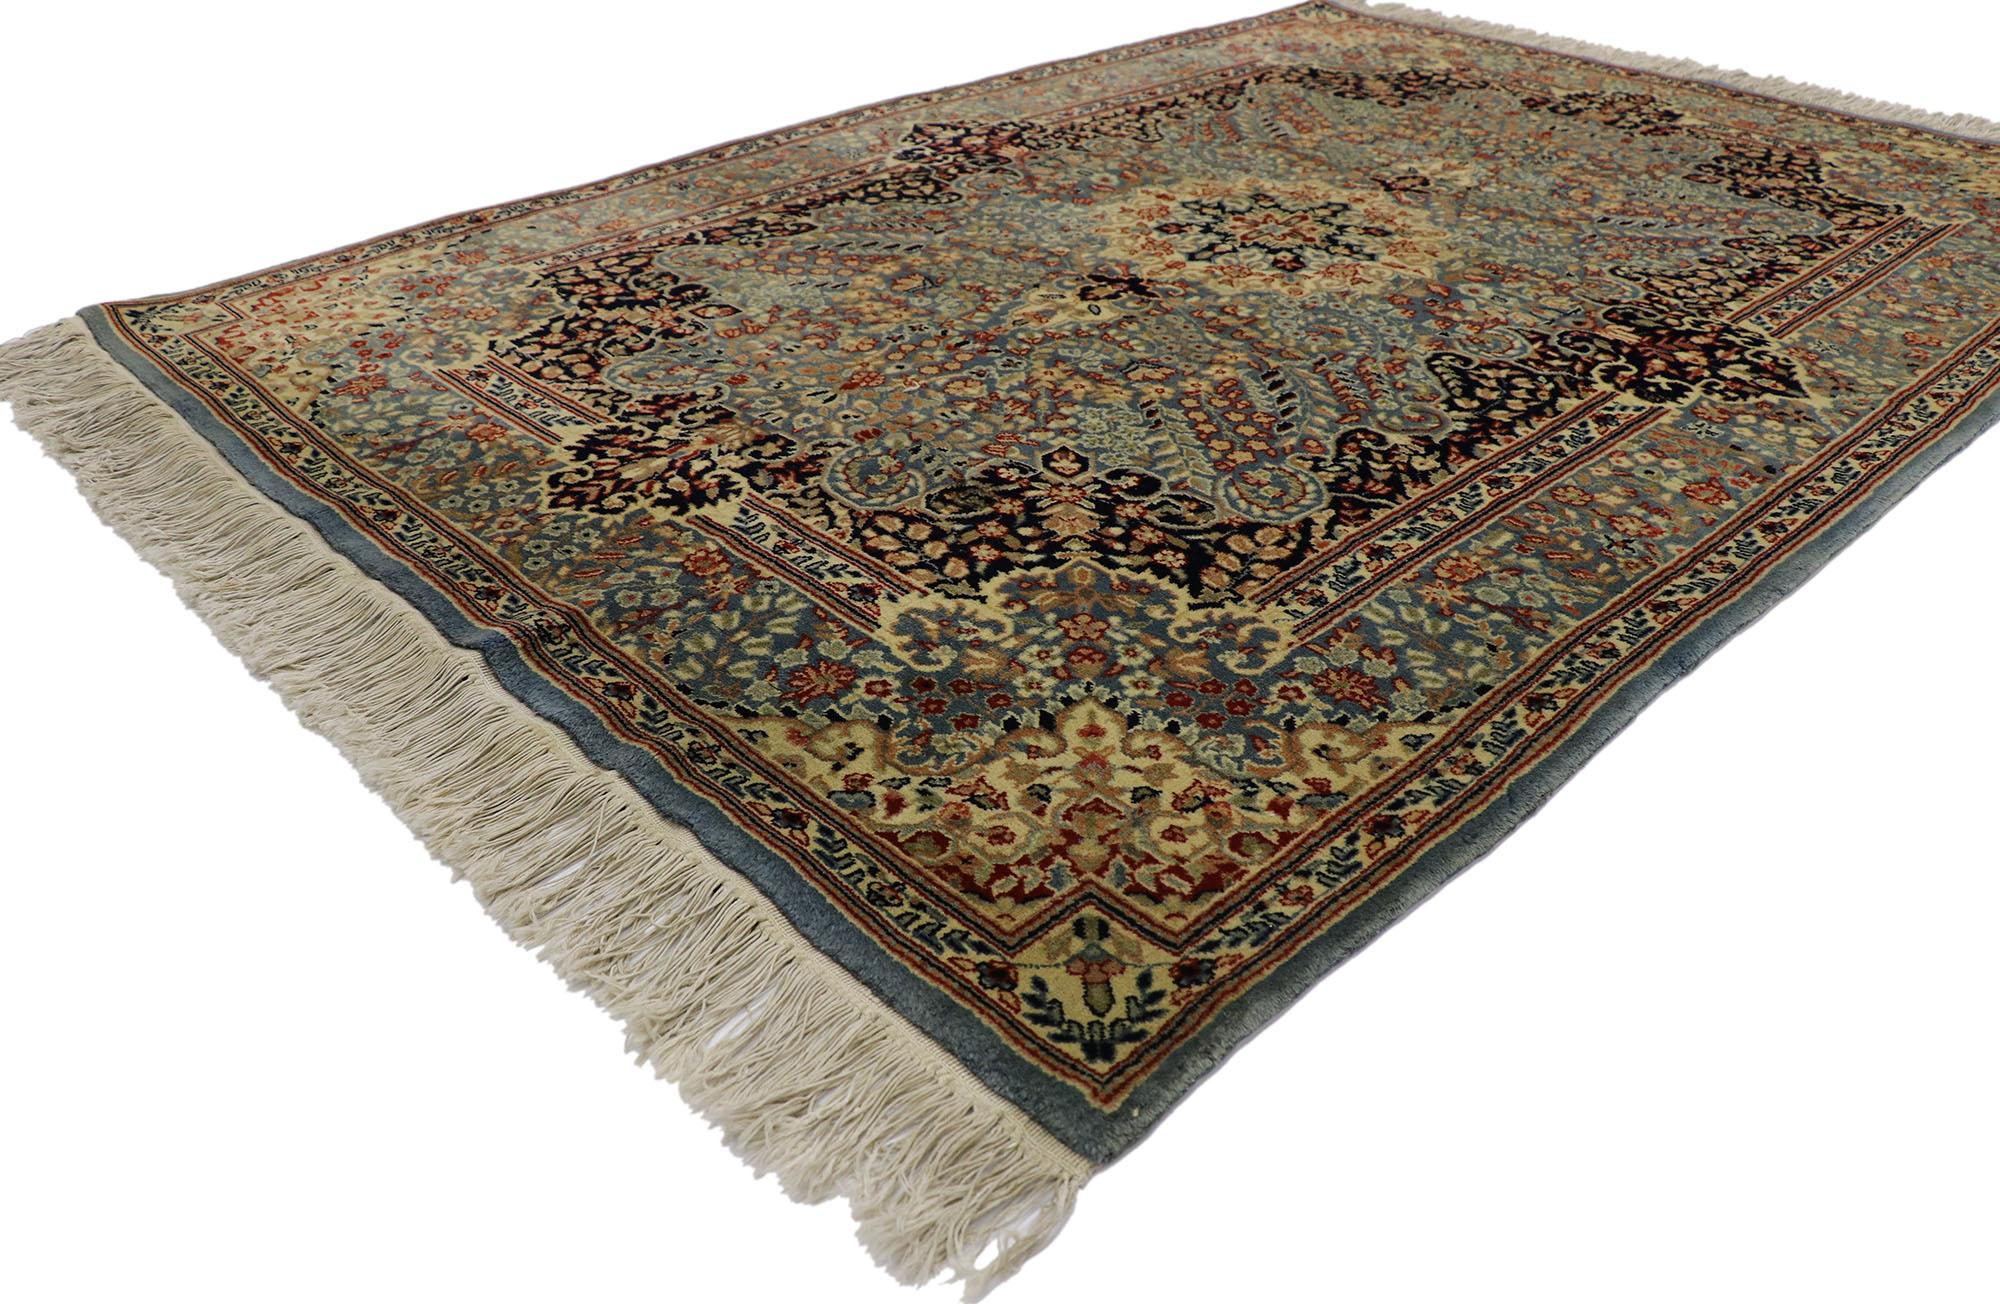 21681 Ancien tapis persan Kerman avec style victorien 04'07 x 06'07. Sophistiqué et raffiné avec un style victorien, ce tapis persan ancien Kerman en laine nouée à la main charme avec aisance. Au centre de la scène se trouve un médaillon